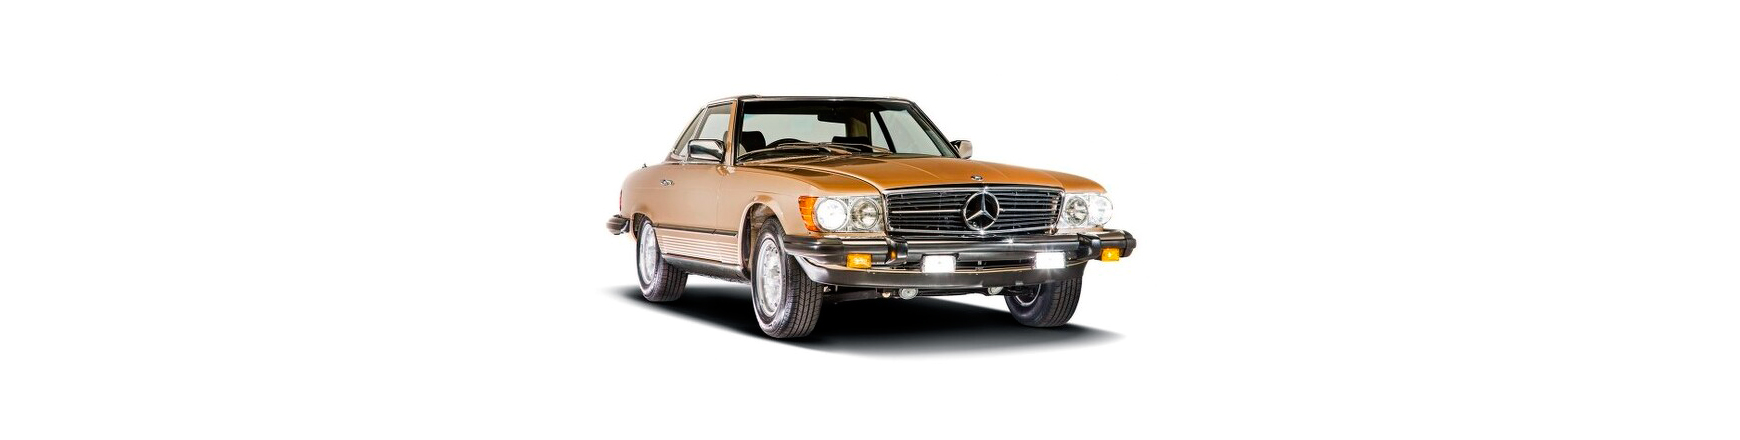 Recambios nuevos de Mercedes W107 / R107 de 1972 hasta 1989.